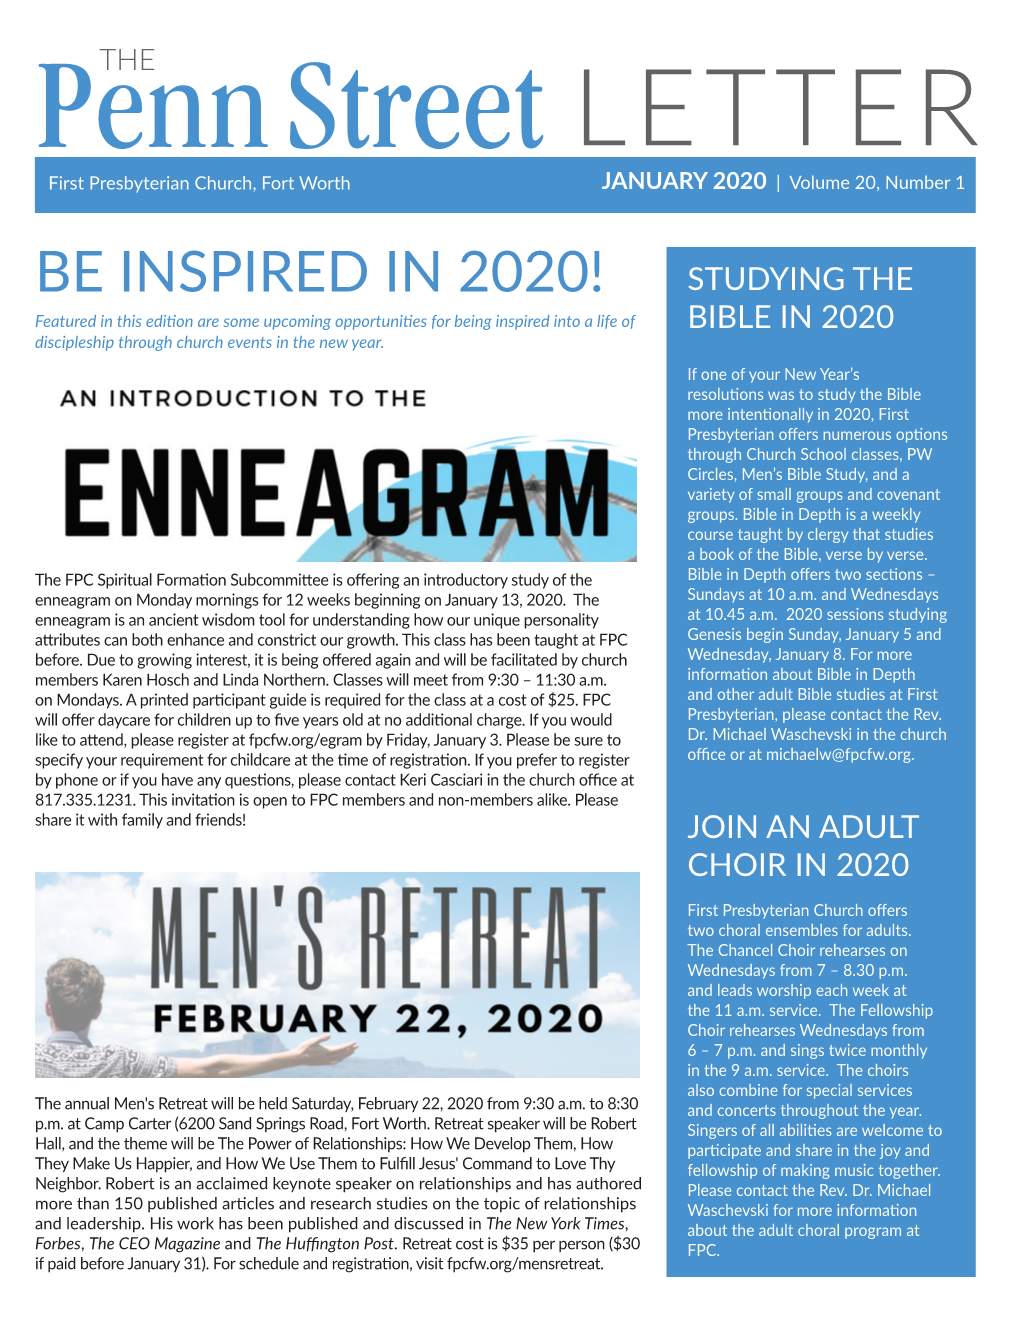 Be Inspired in 2020!